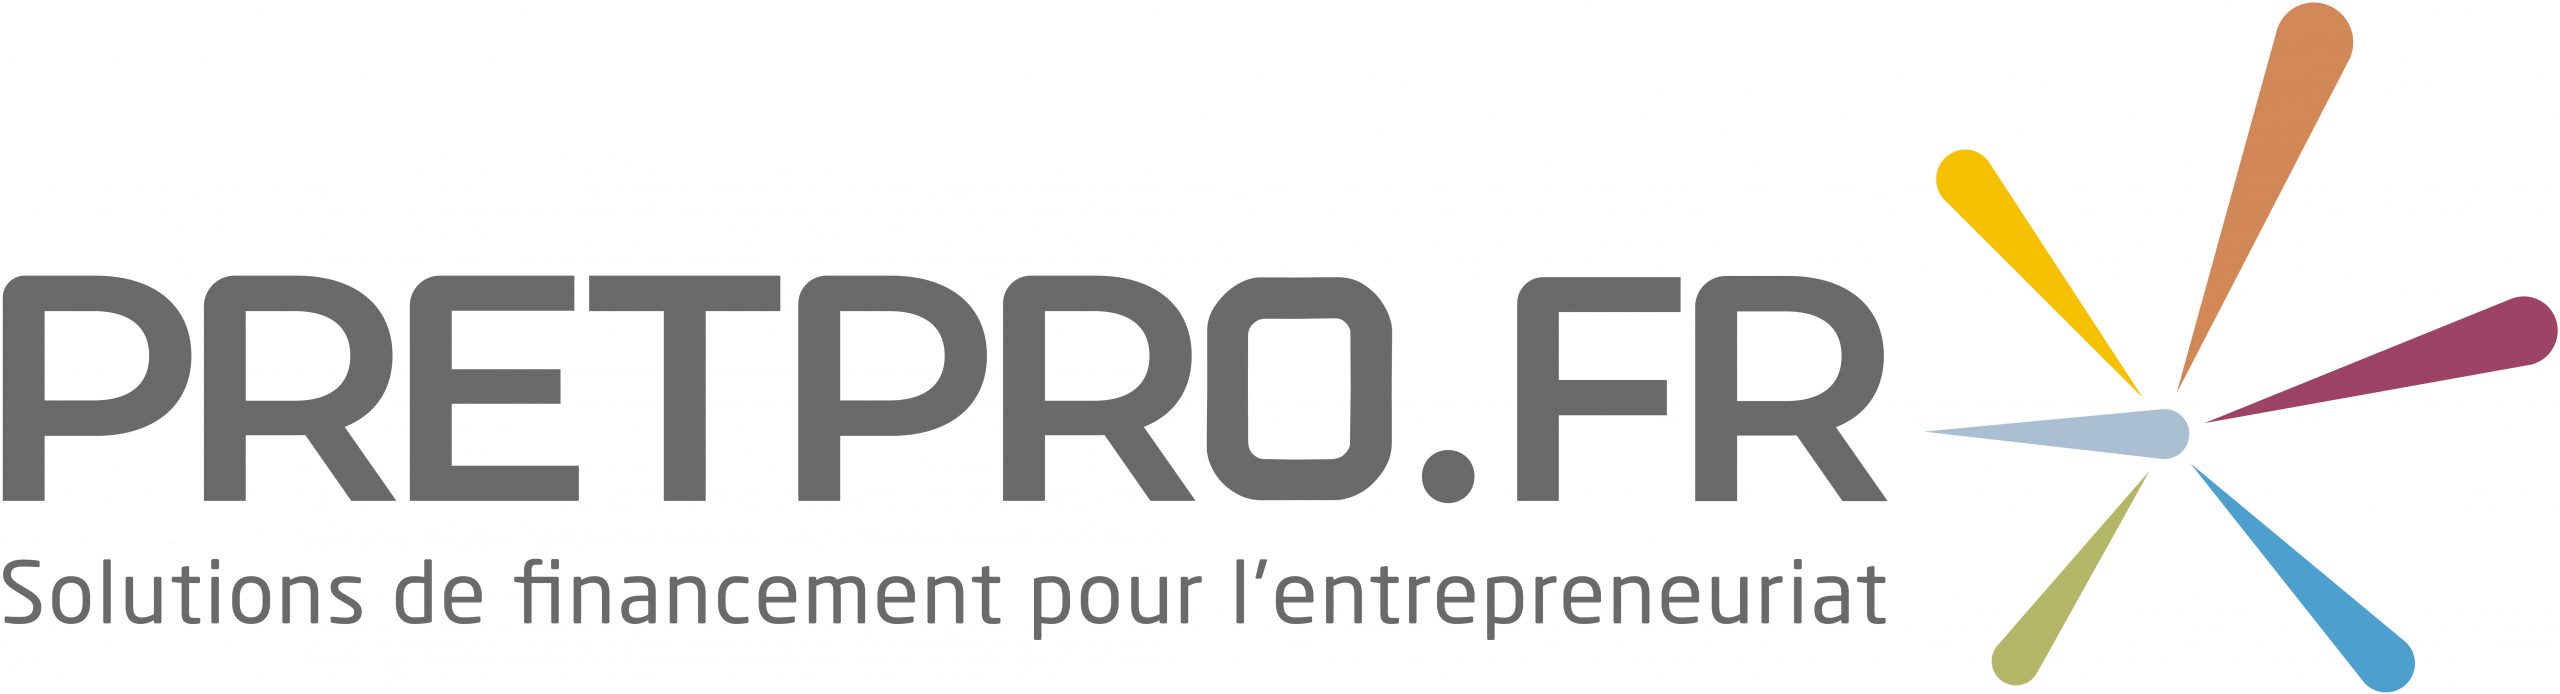 Pretpro.fr – Bourgogne Franche-Comté